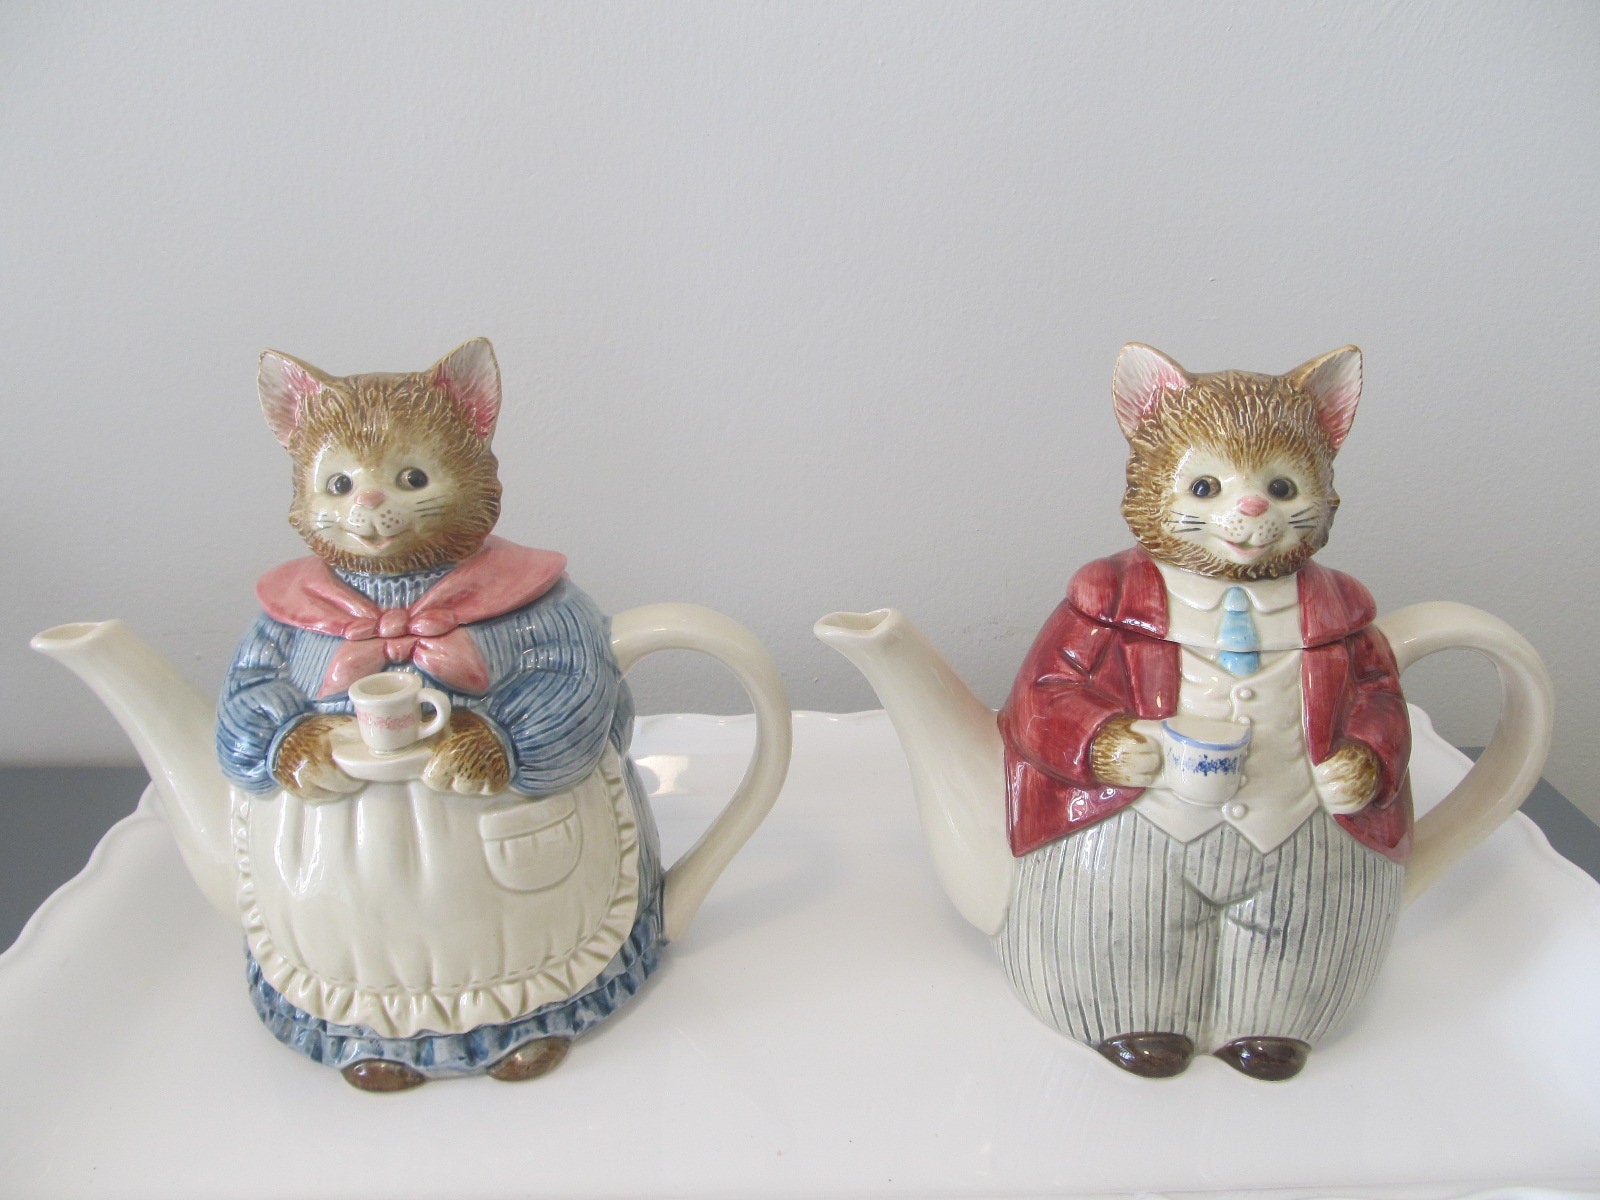 kannya Ceramic Teapot Cat 480 ml Animal Tea Pot New Japan